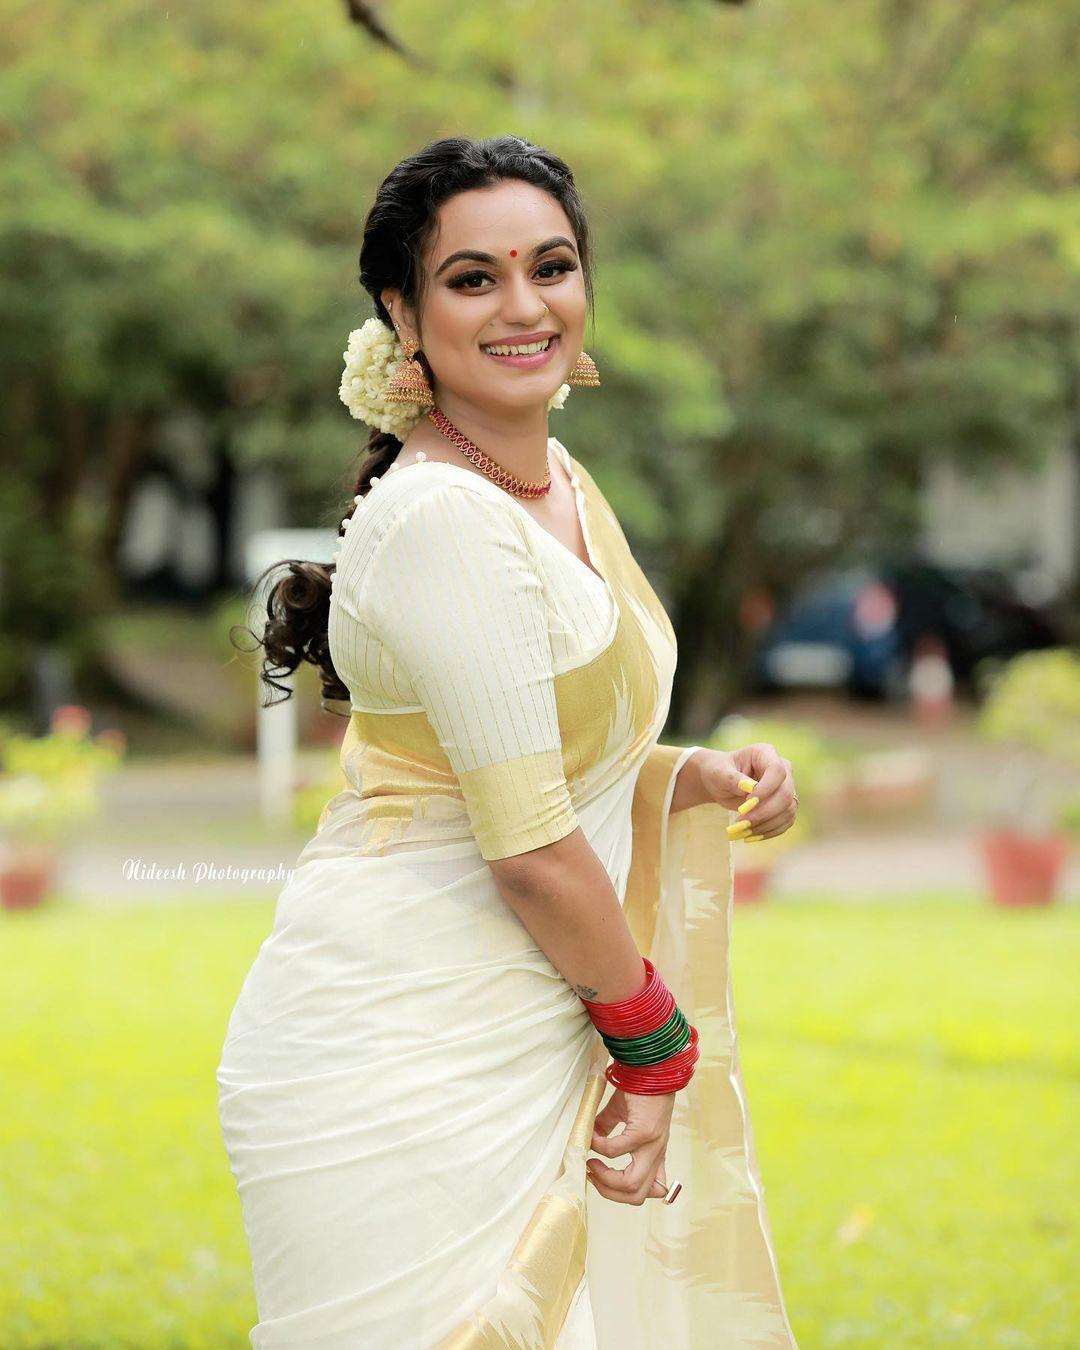 Nadigai Suganya Sex Nadigai - Malayalam actress lakshmi nakshathra in kasavu saree hot photos |beautiful  and sexy photoshoot Photos: HD Images, Pictures, Stills, First Look Posters  of Malayalam actress lakshmi nakshathra in kasavu saree hot photos  |beautiful